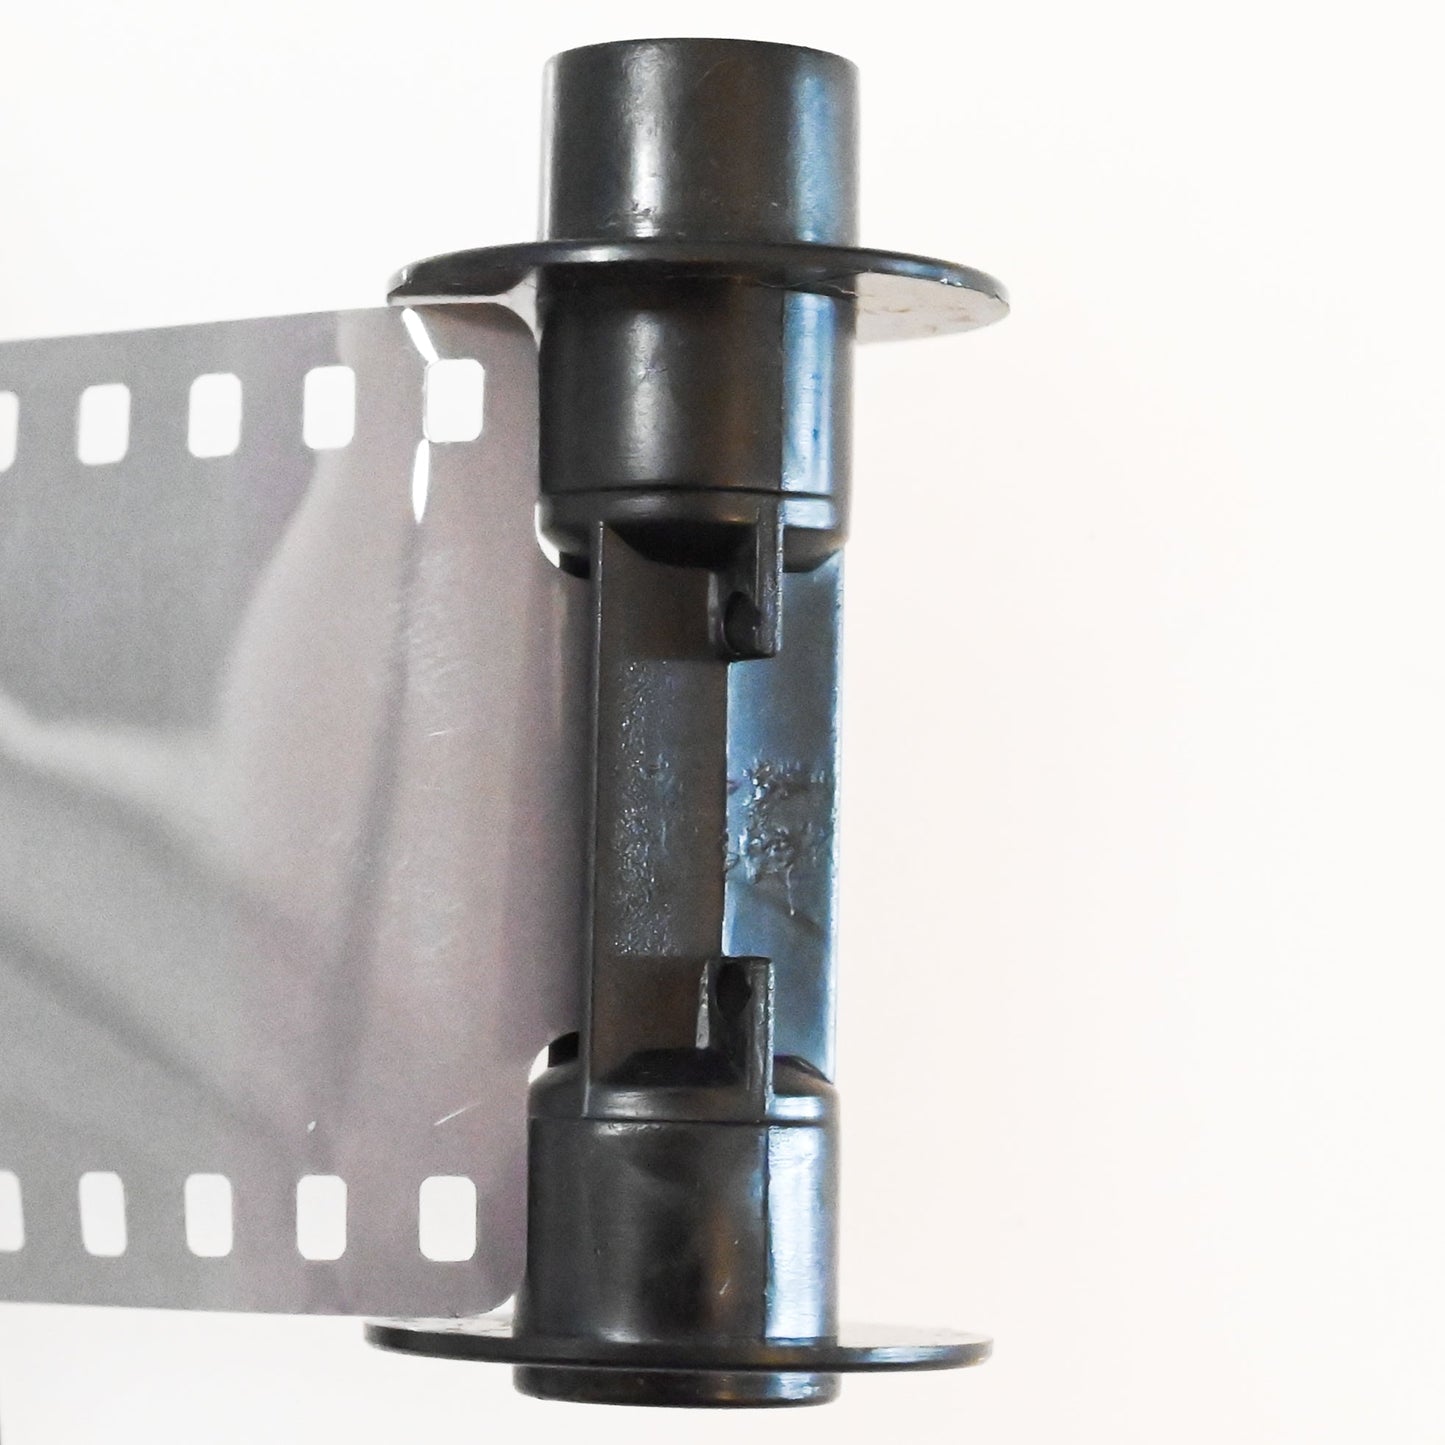 【送料無料3個セット】【エコパックでメール便】マリックス エアカラーネガフィルム 100D 36枚 MARIX AirColor NegaFilm